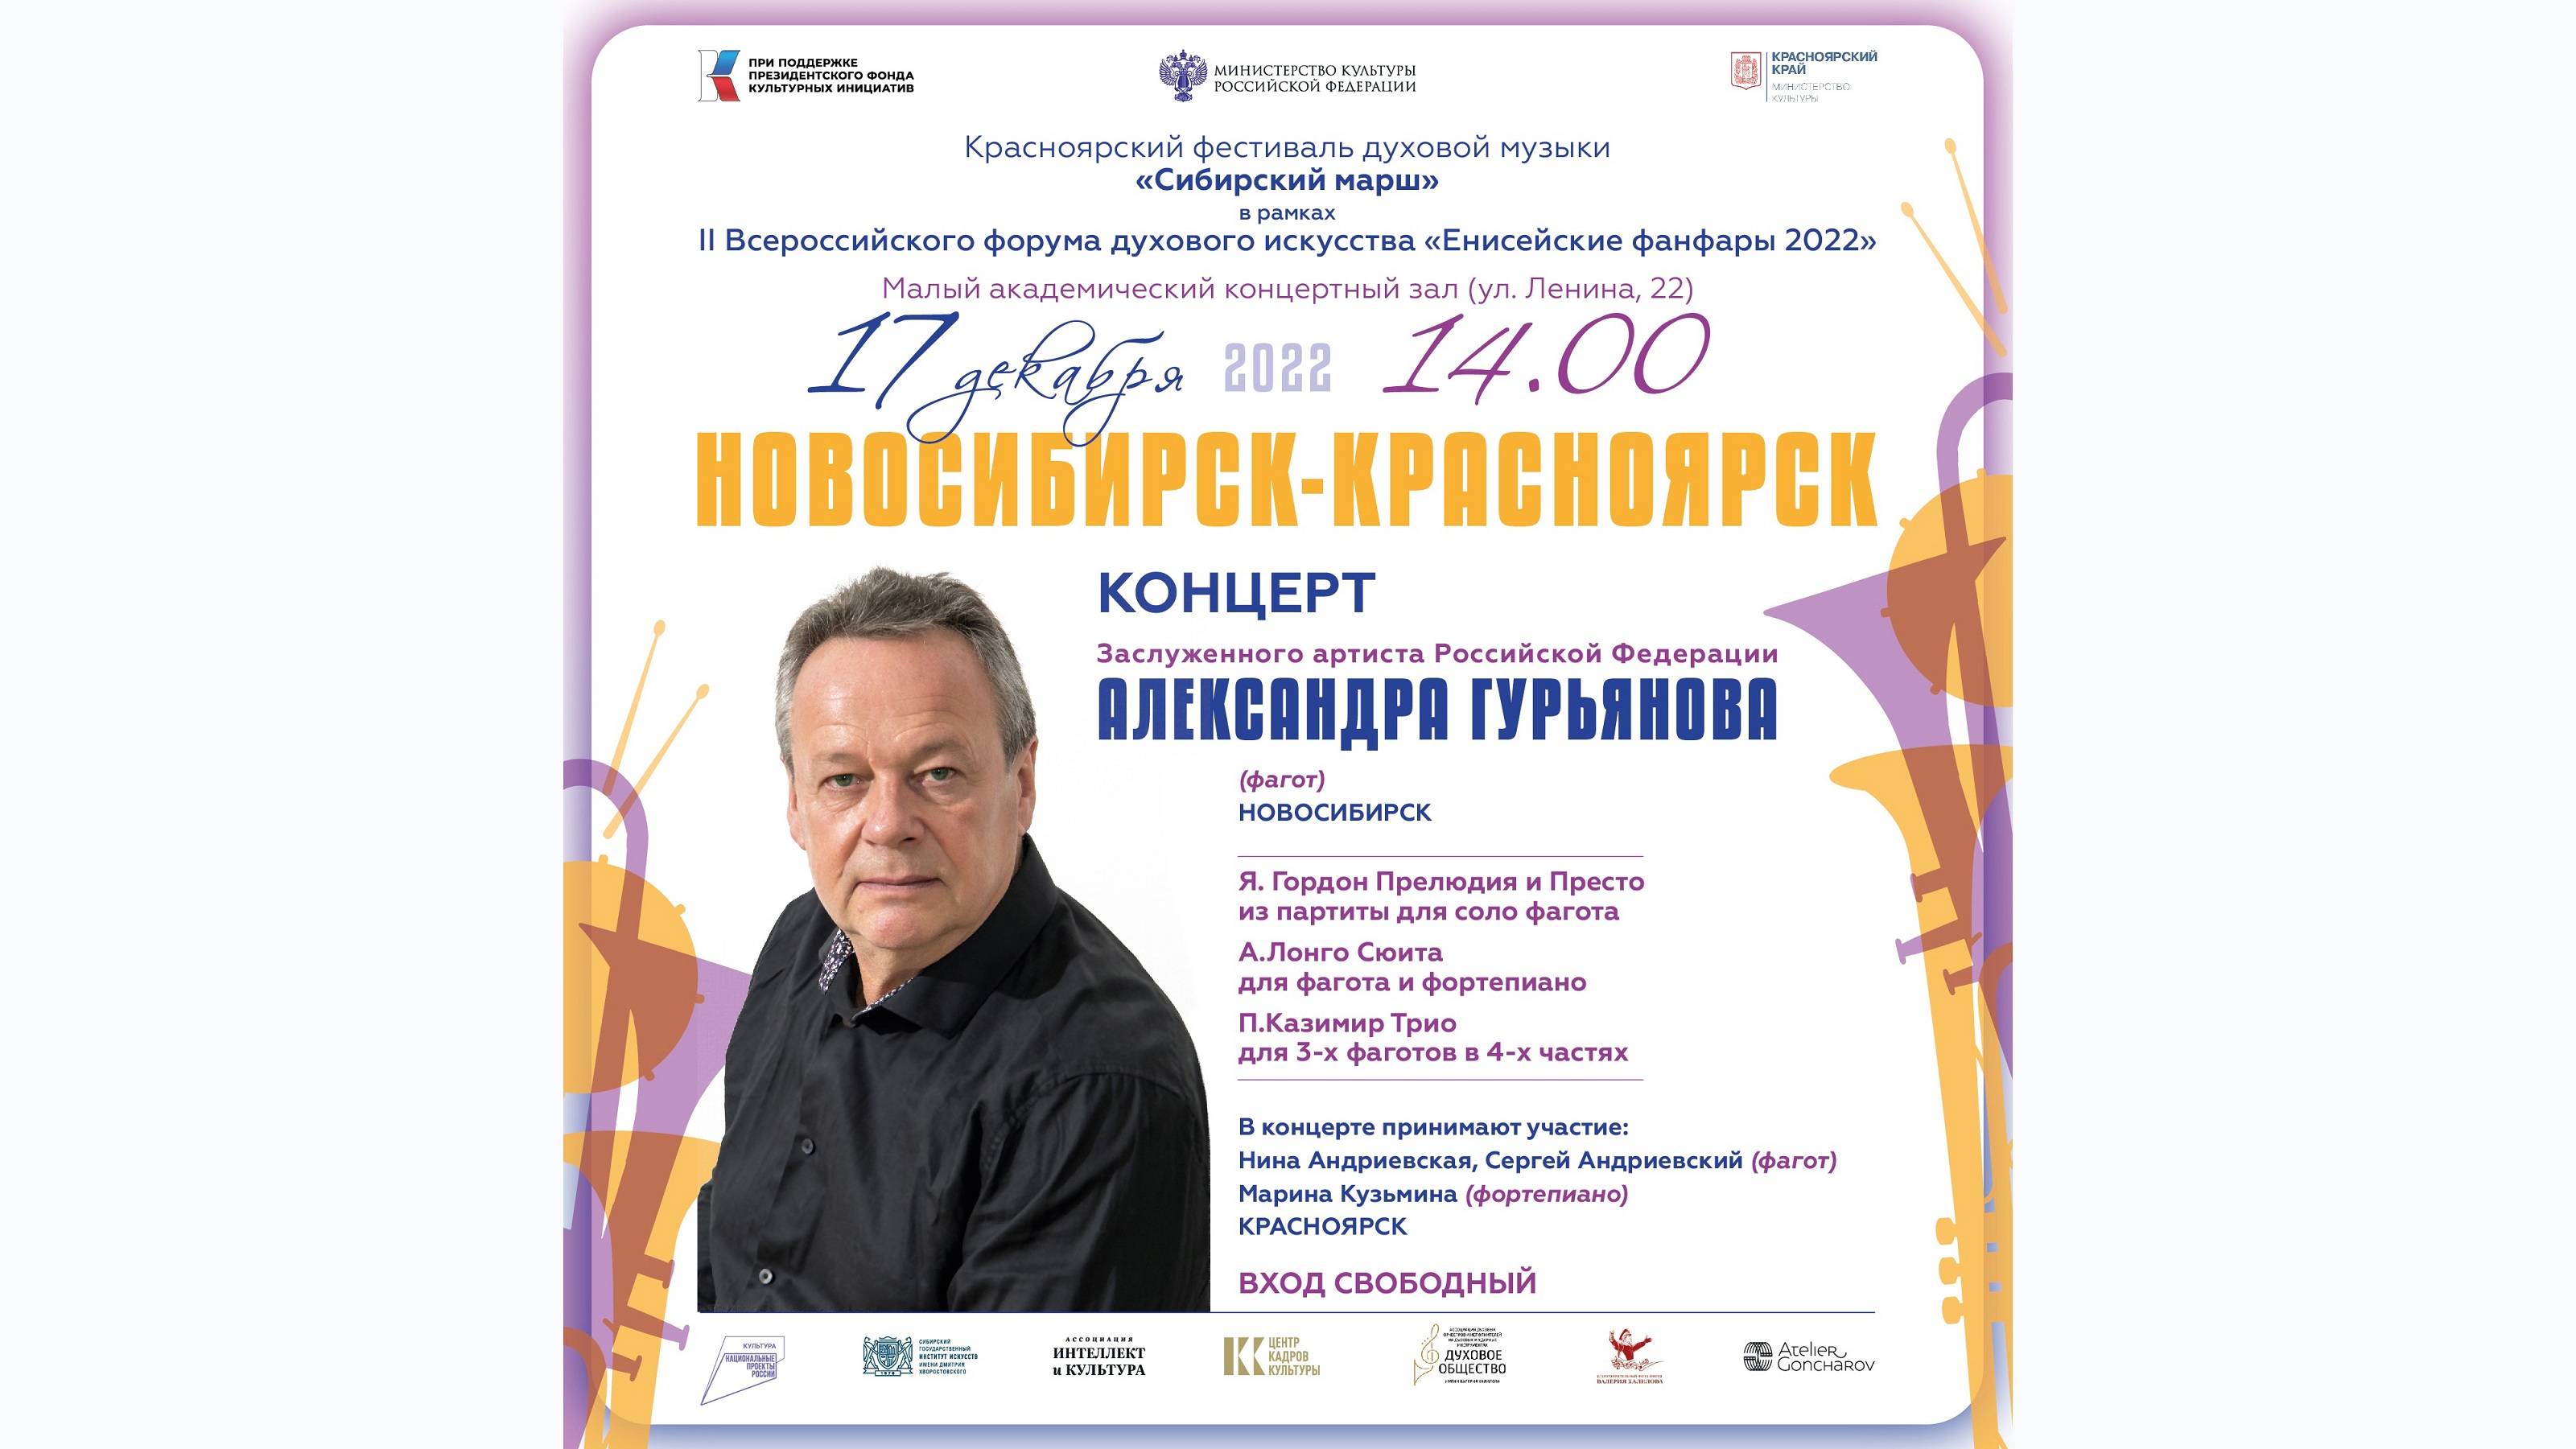 Красноярск концерты 2022 года